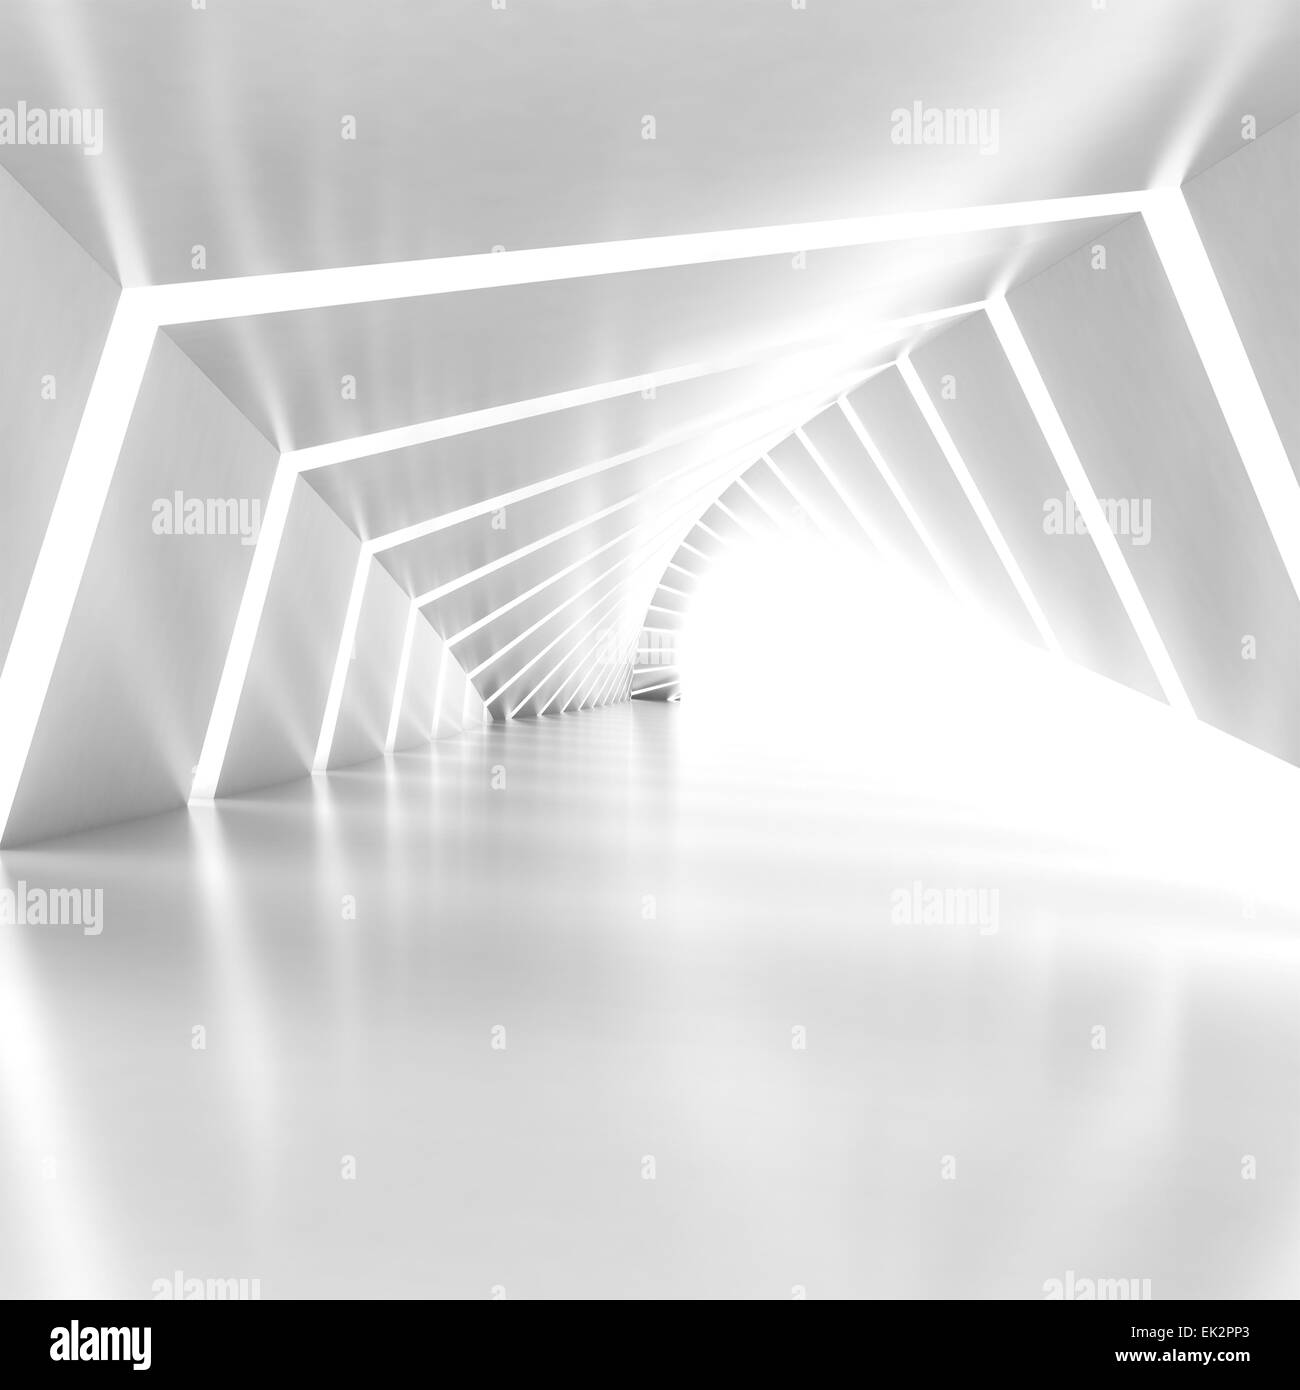 Abstract vuoto bianco illuminato shining piegate corridoio interno, 3D render illustrazione, composizione quadrata Foto Stock